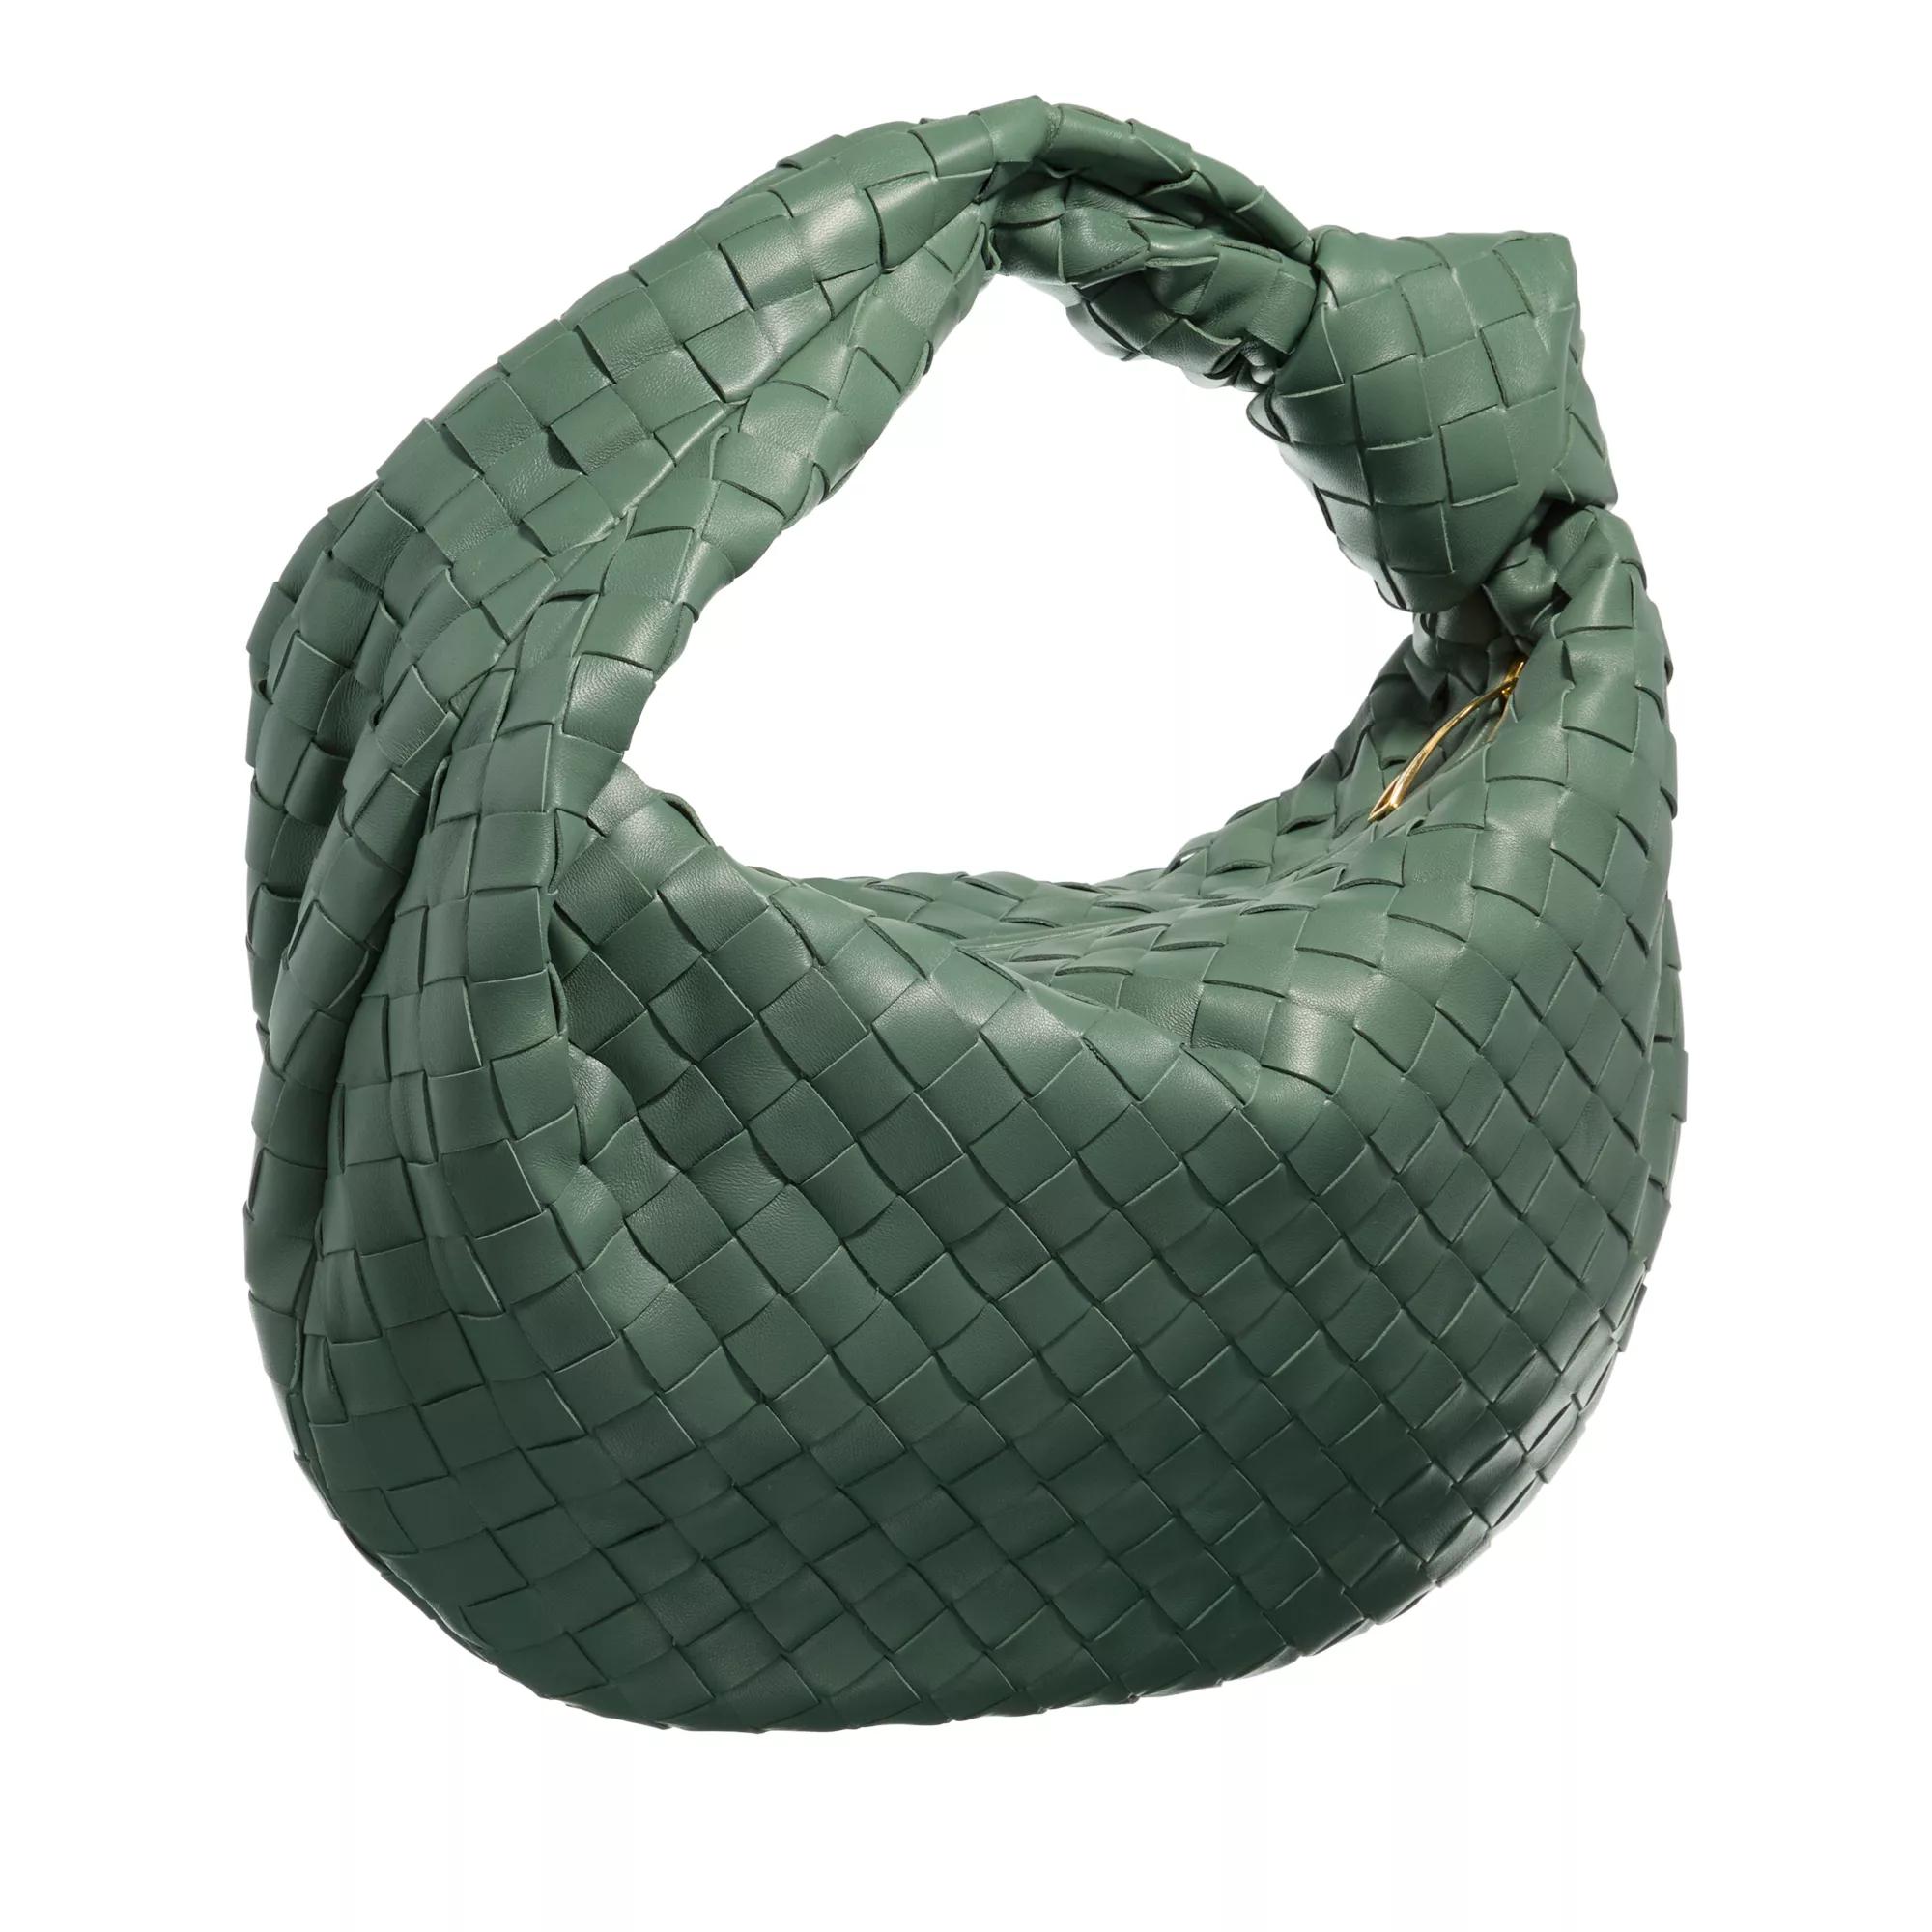 Bottega Veneta Hobo bags Teen Jodie Satchel Bag in groen